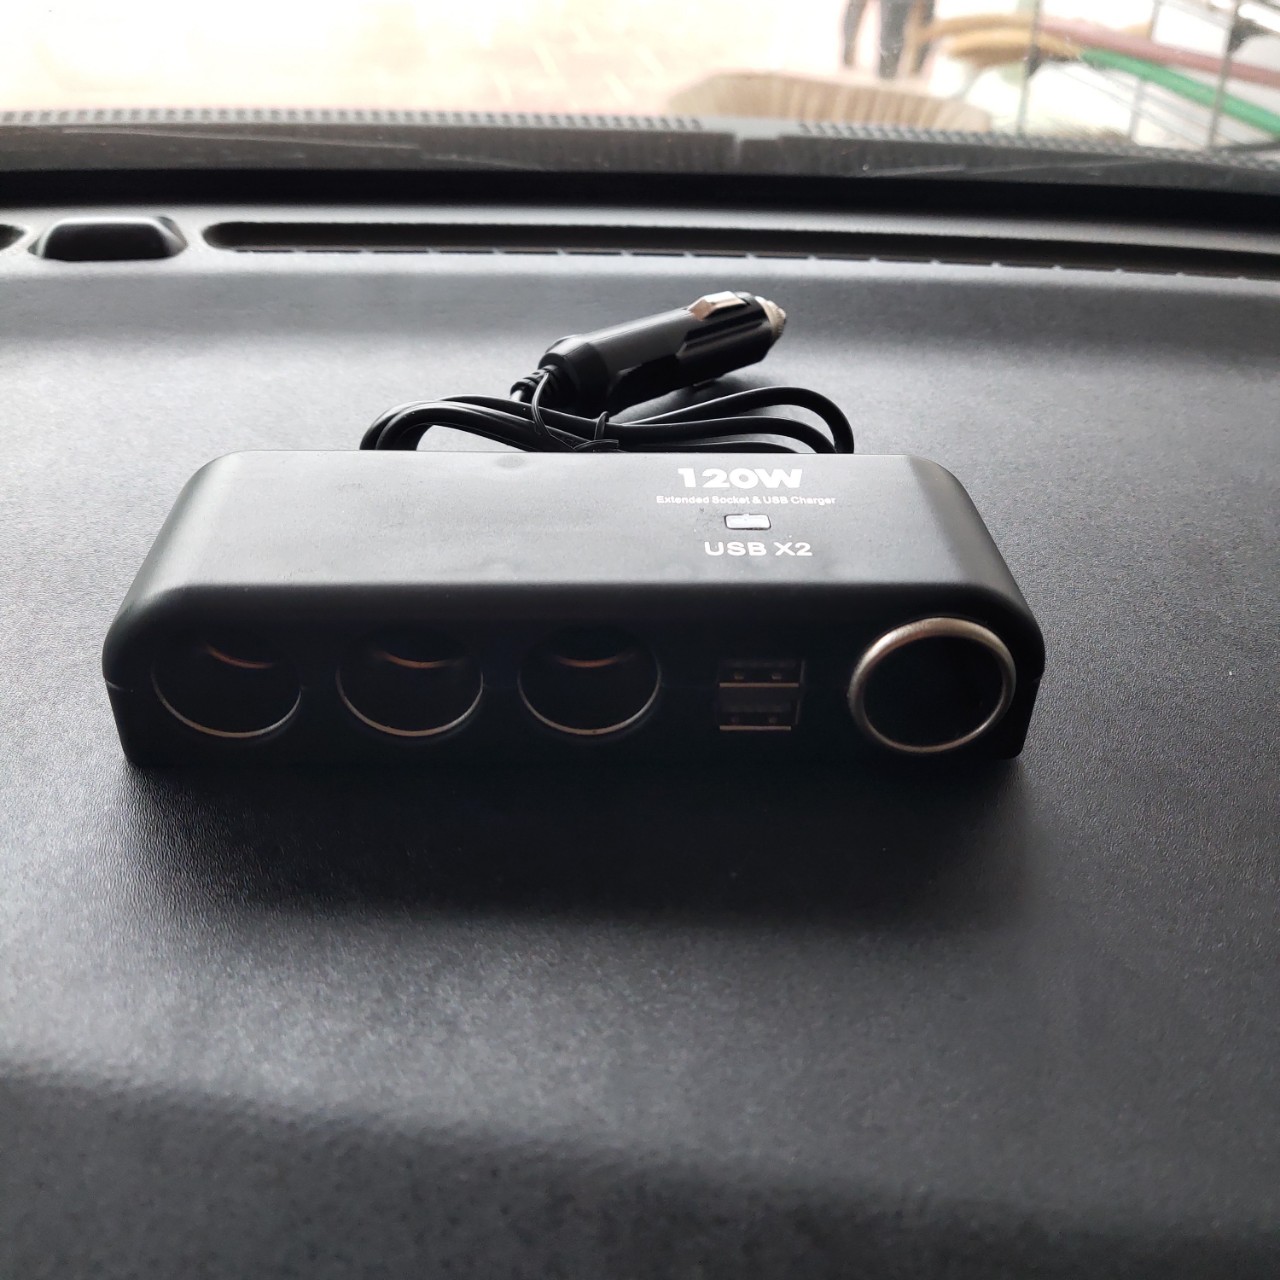 Bộ chia cốc tẩu sạc ô tô xe hơi 12v-24v 4 cổng USB kép 120w mẫu mới loại tốt kèm 2 cầu chì dây chống cháy